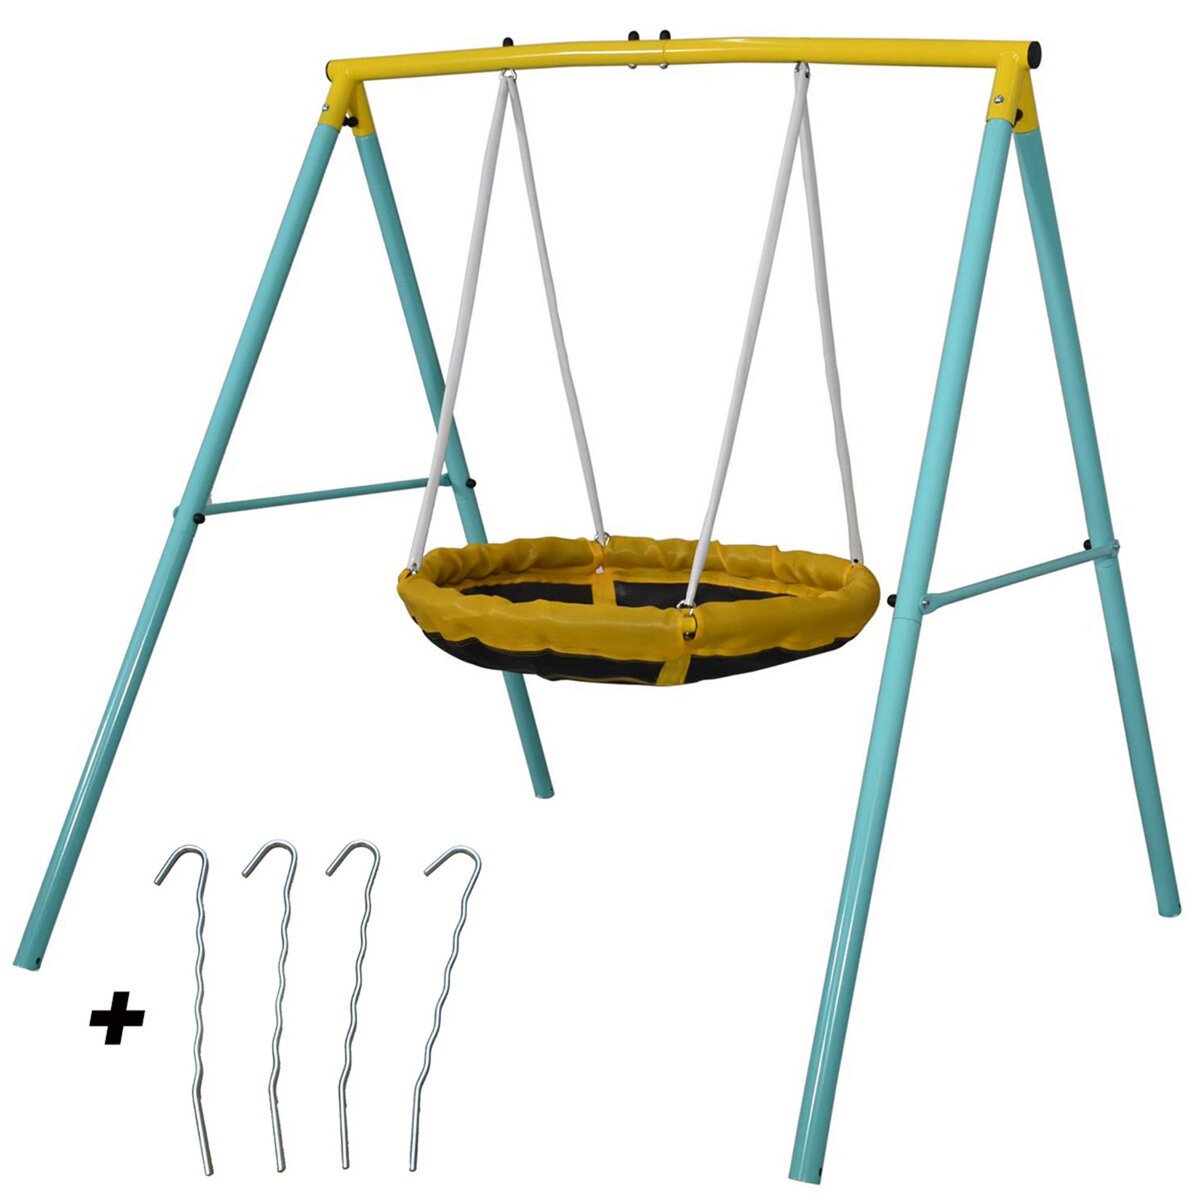 JUMP POWER Balancoire Enfant Tiny Swing - Portique Balancoire nid d oiseau - 2 Enfants à la fois - Poids Max 90 kgs - Idéal petits jardins